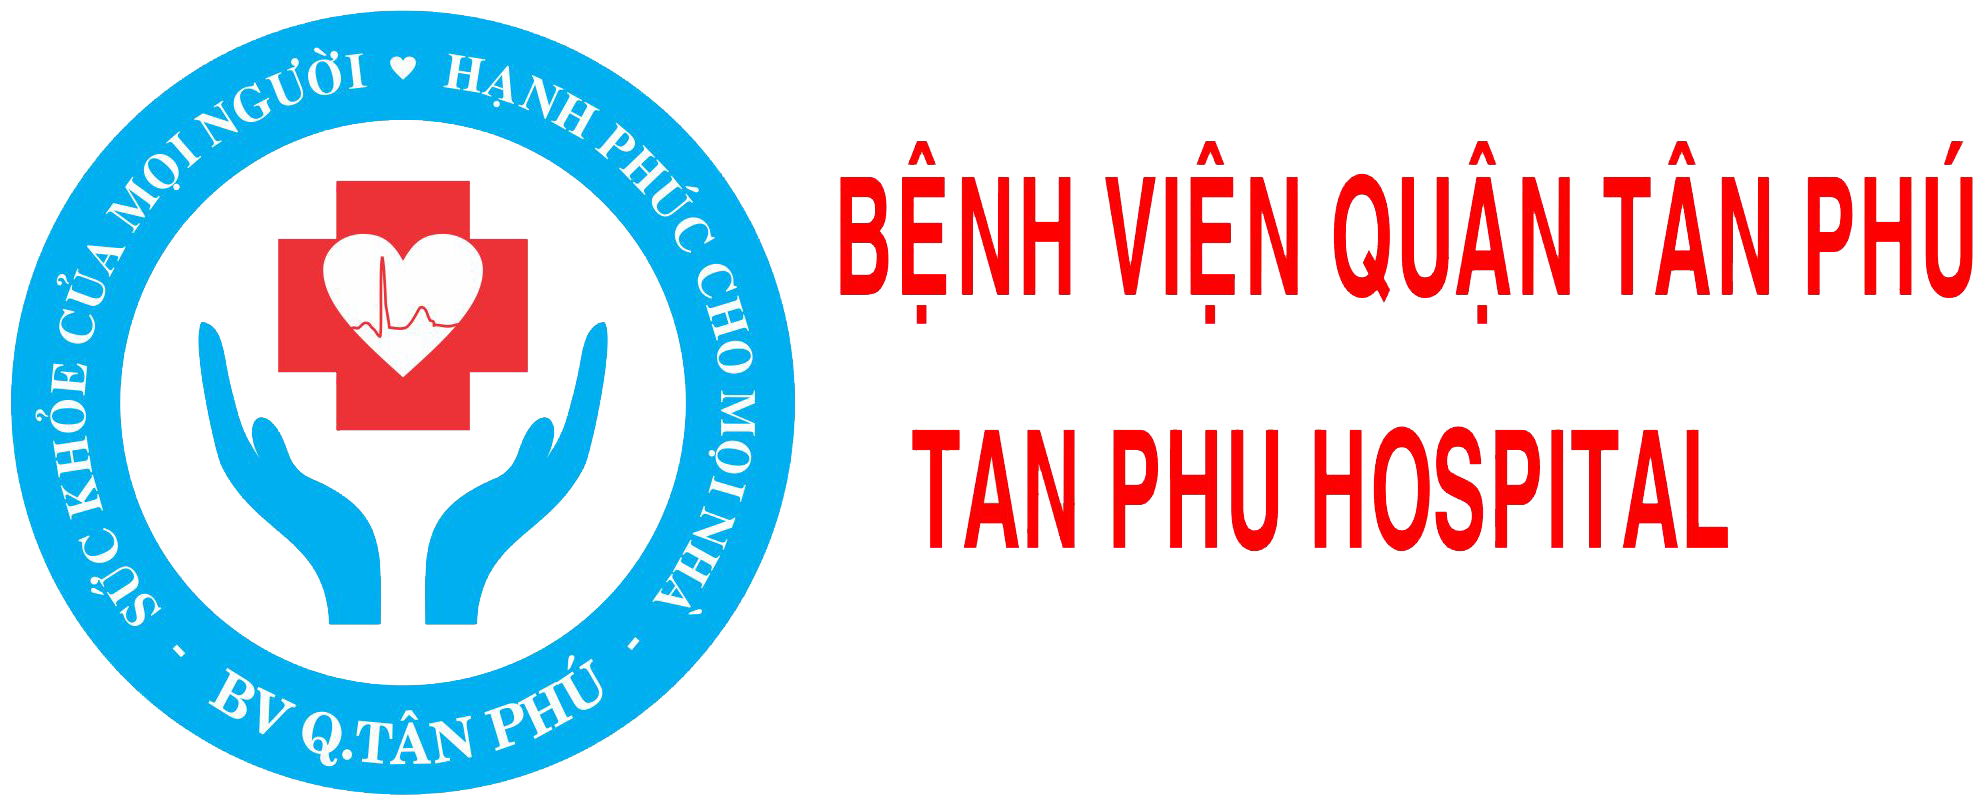 Về việc giám định và gửi báo giá Sửa chữa máy mổ phaco cho bệnh viện quận Tân Phú